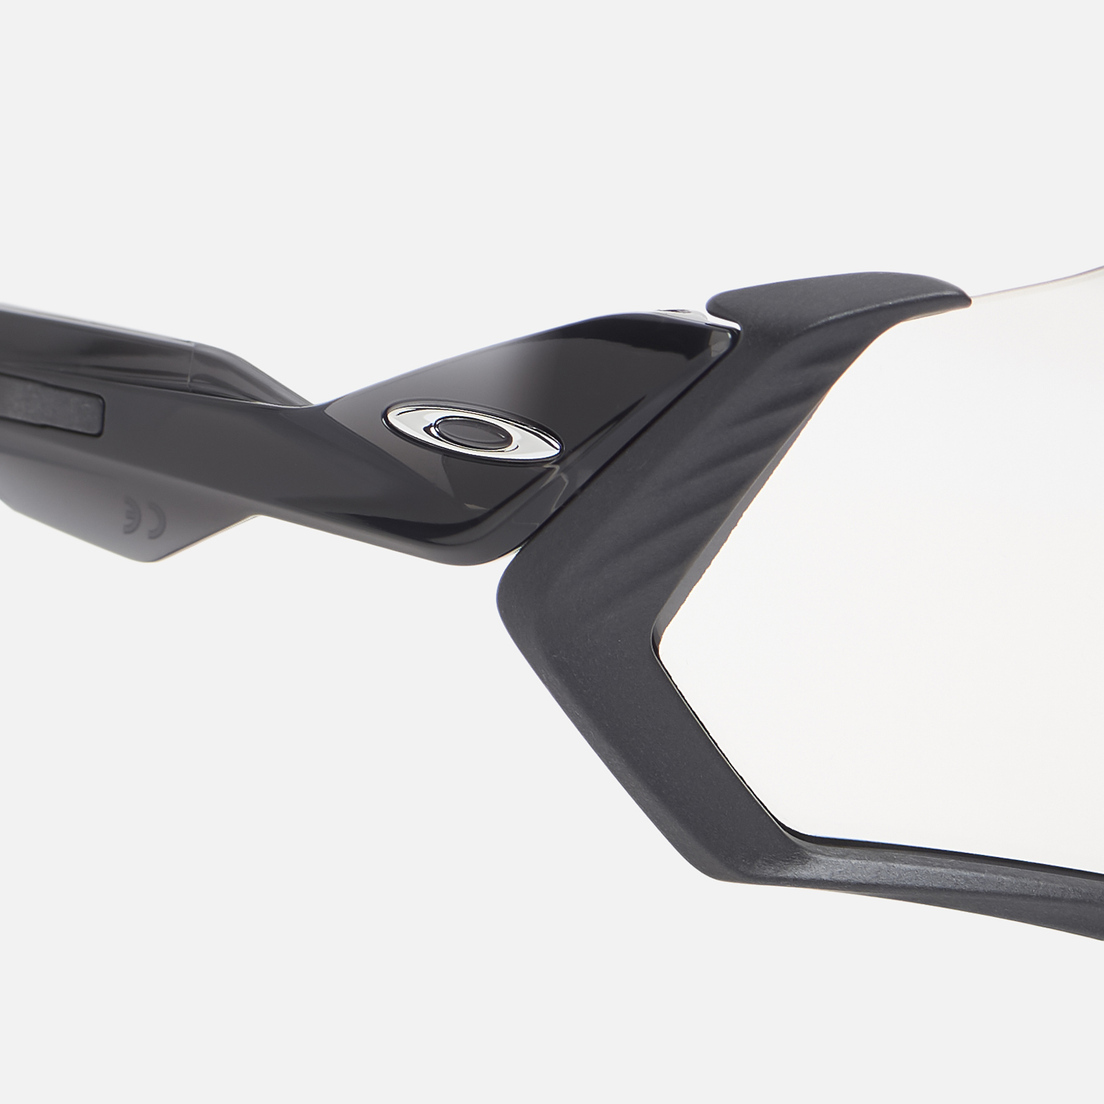 Oakley Солнцезащитные очки Flight Jacket